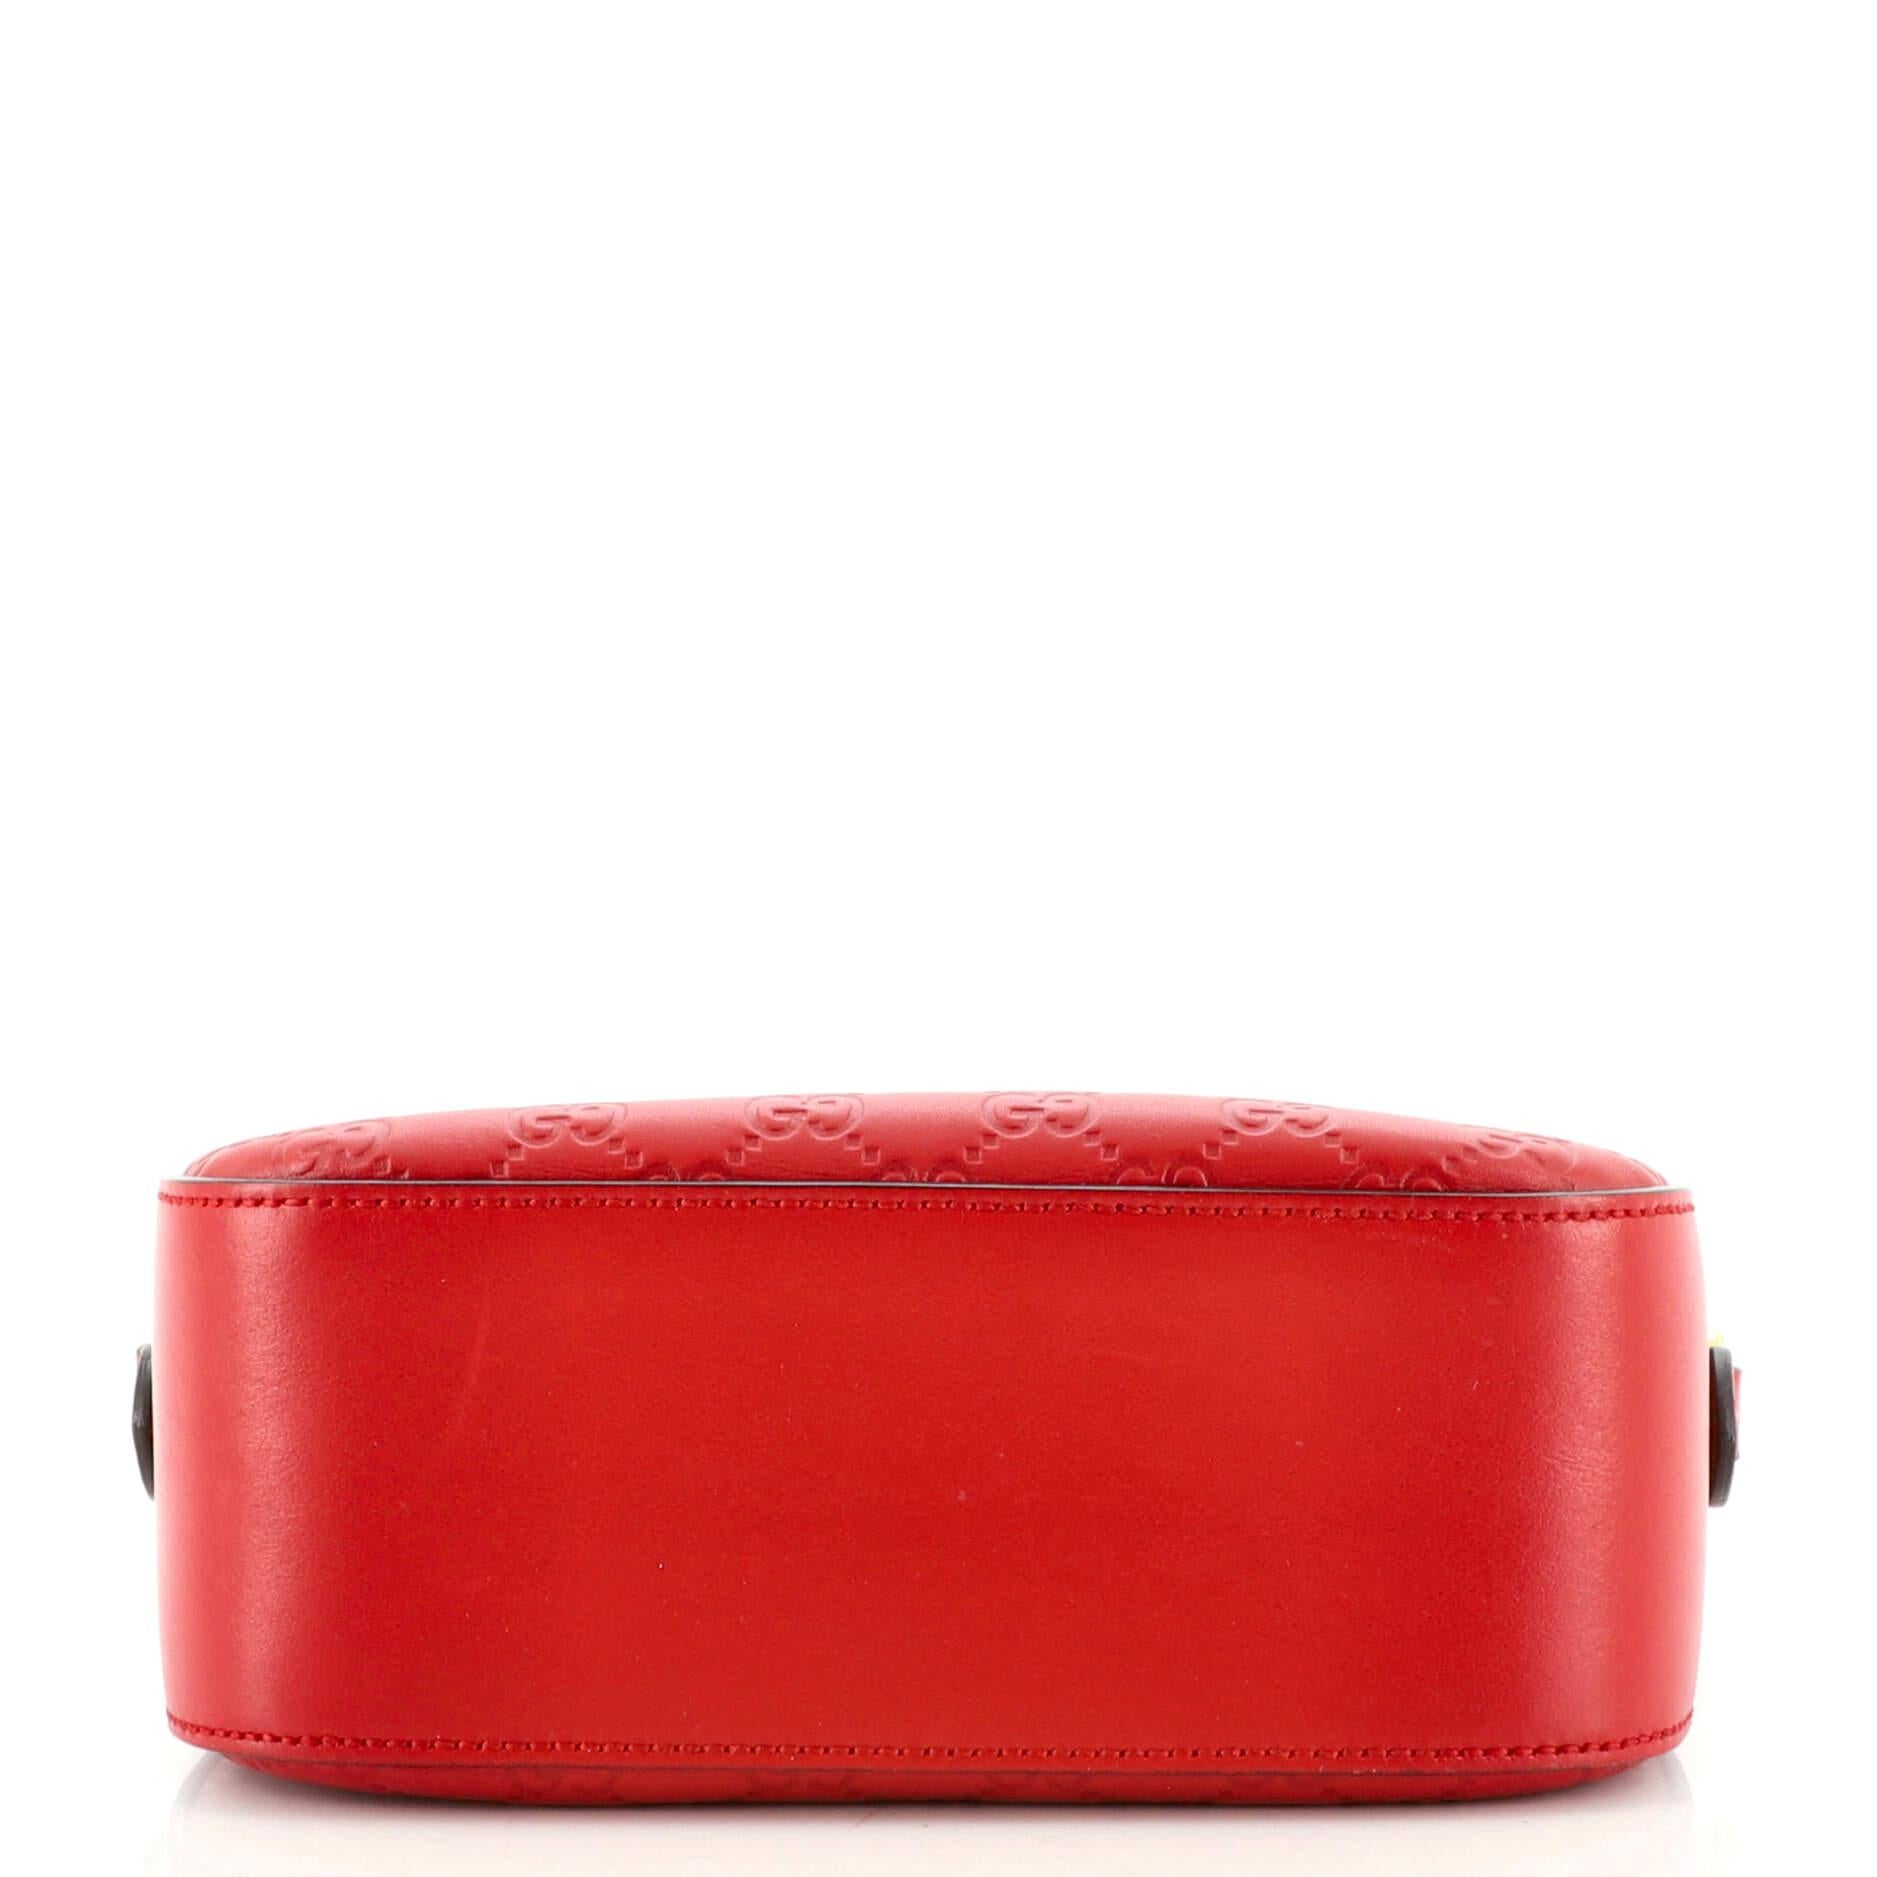 Red Gucci Signature Camera Bag Guccissima Leather Small